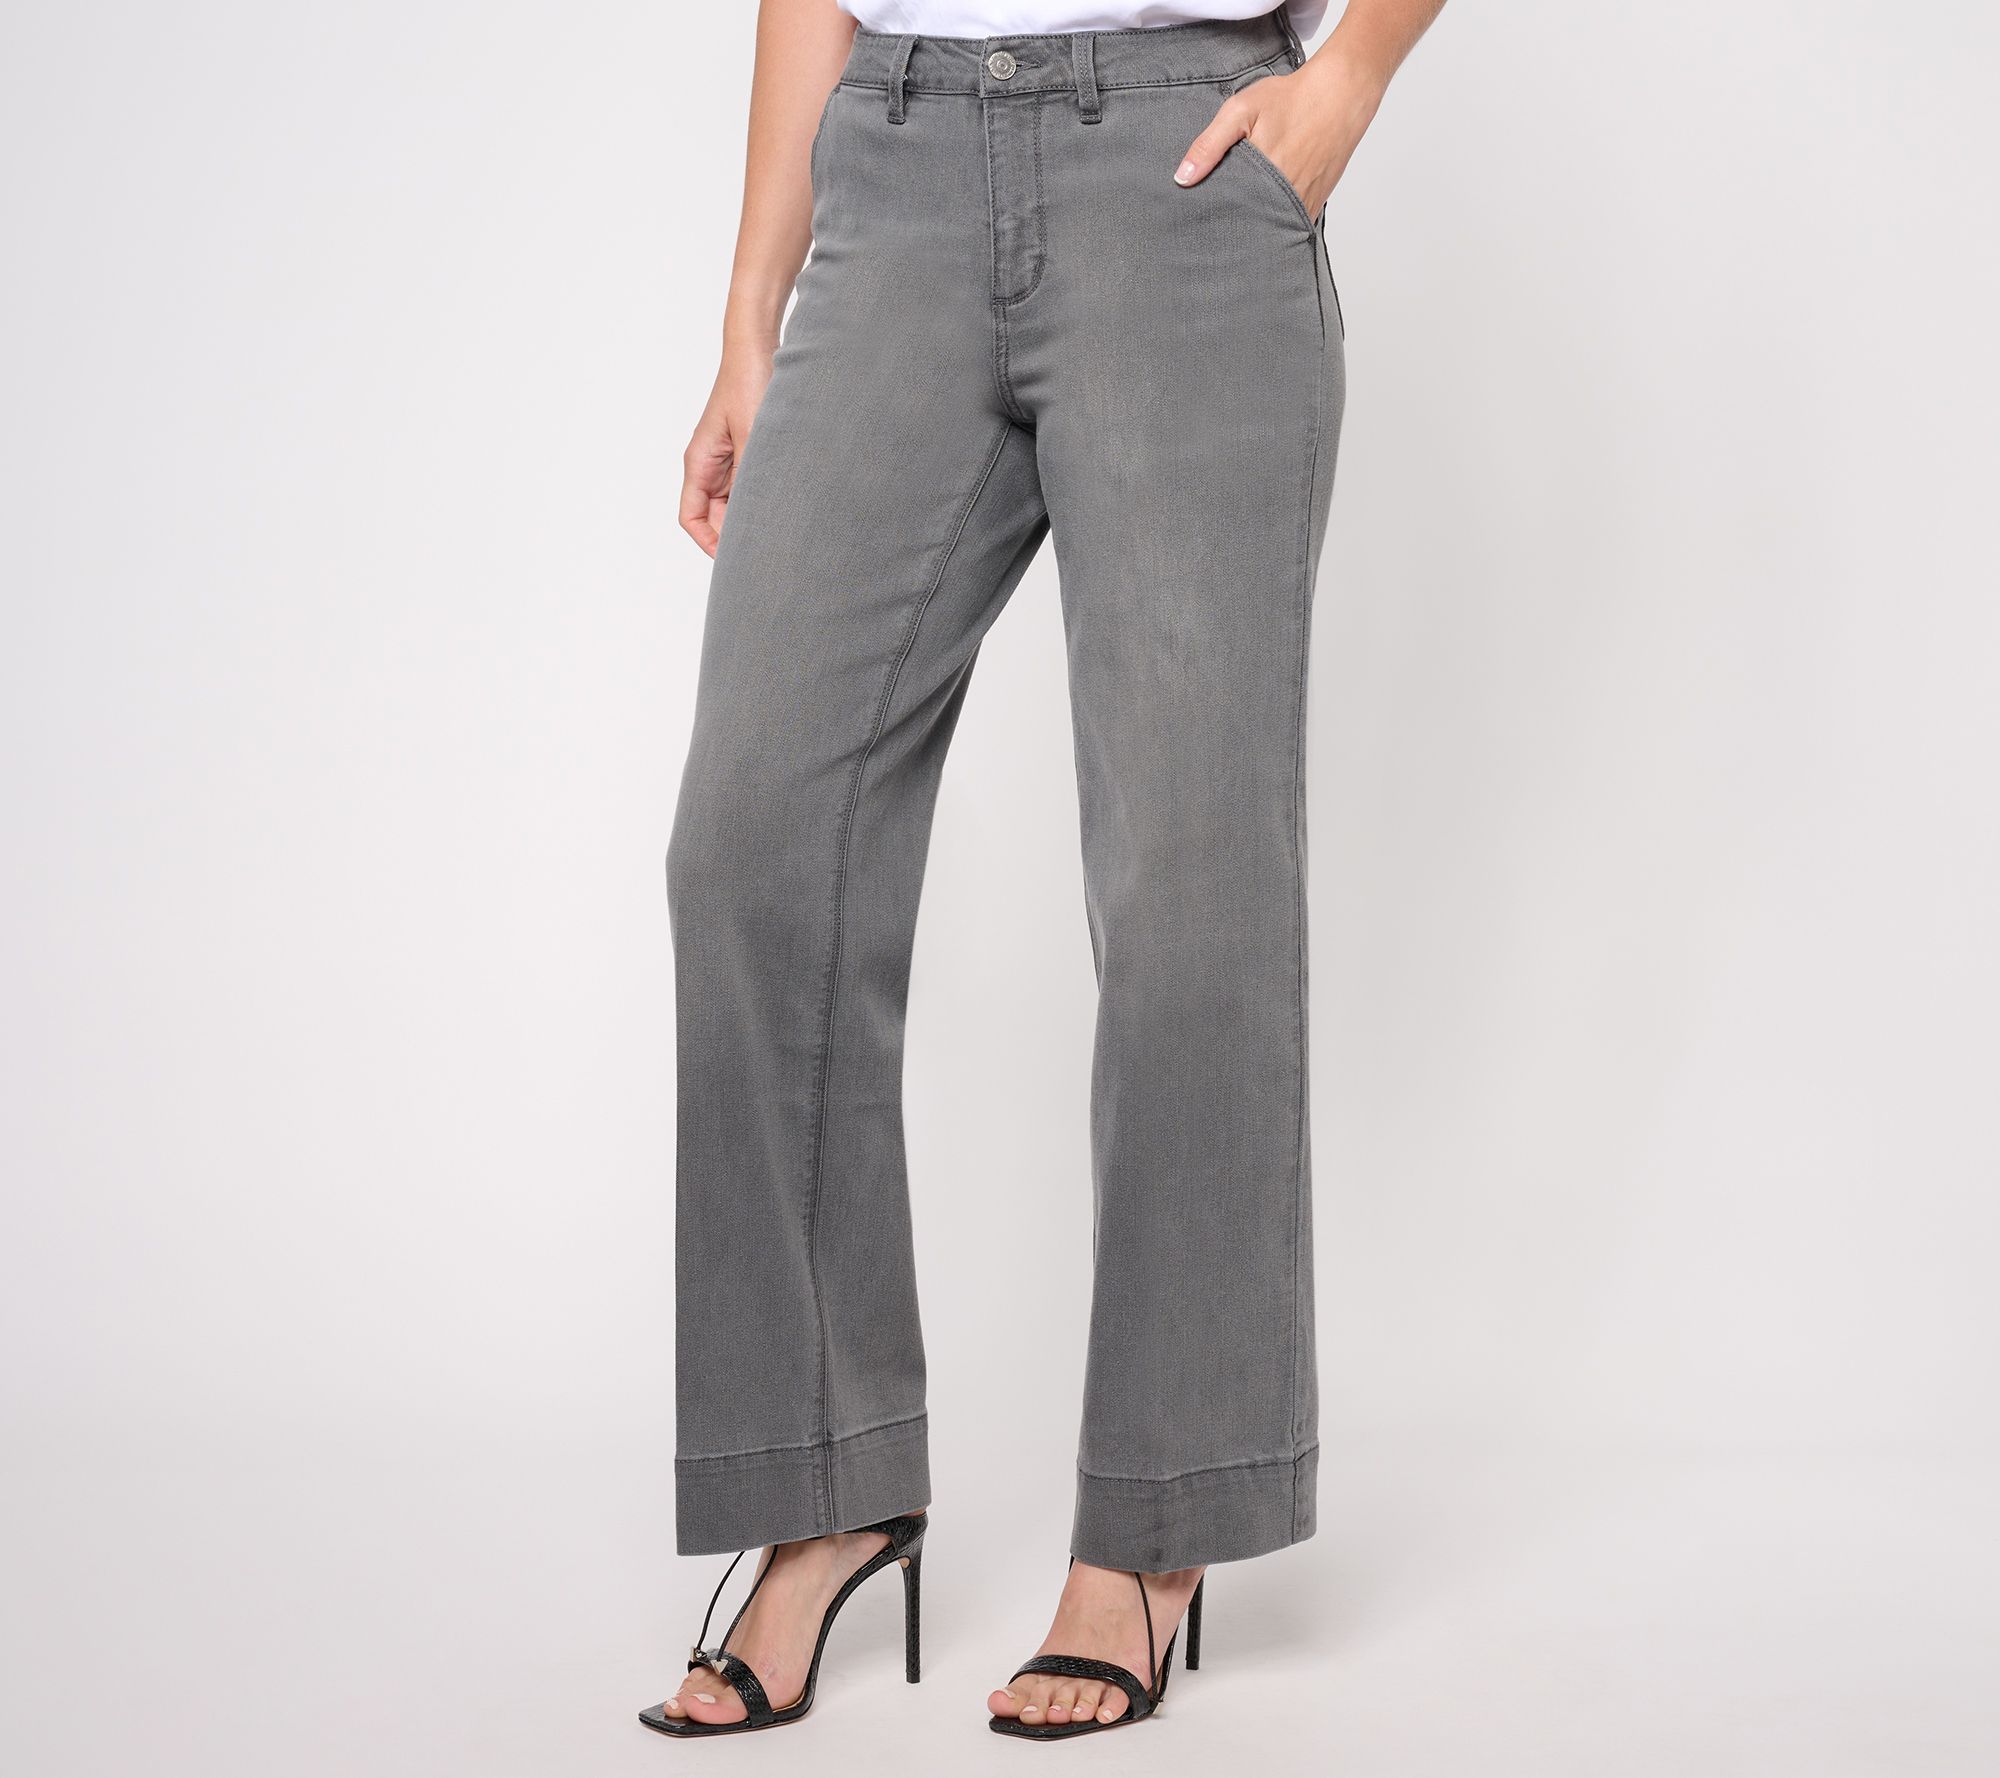 Susan Graver Gray Casual Pants Size 14 (Petite) - 70% off